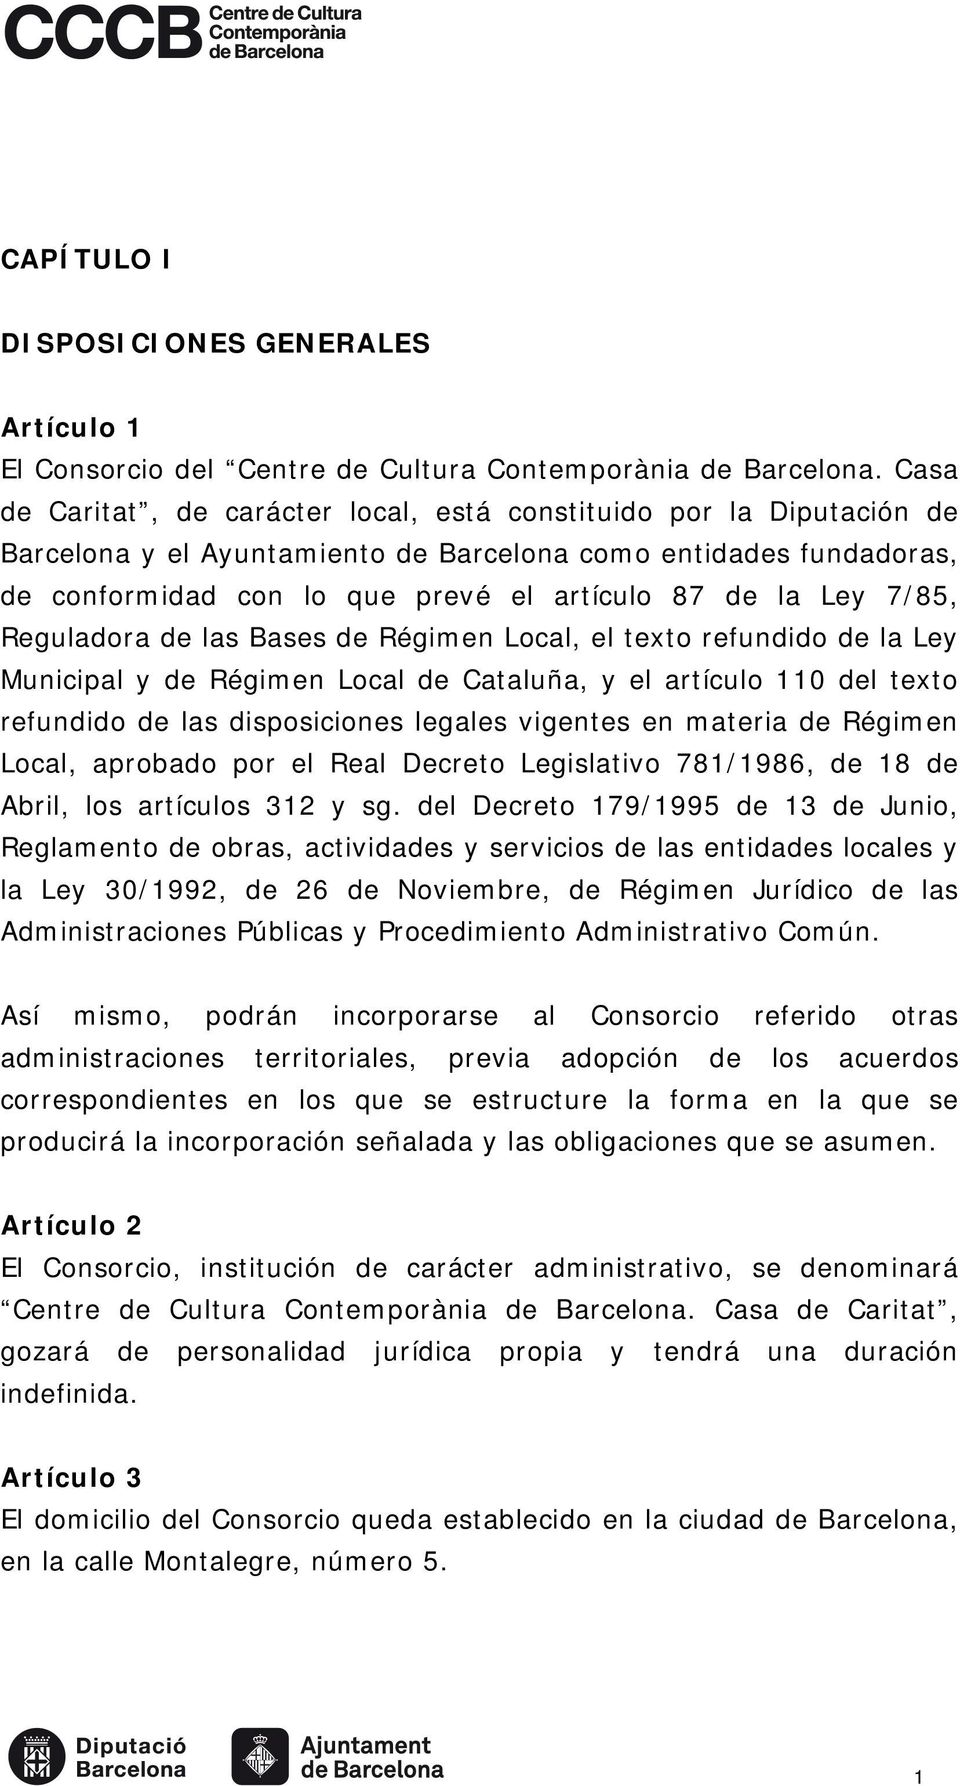 7/85, Reguladora de las Bases de Régimen Local, el texto refundido de la Ley Municipal y de Régimen Local de Cataluña, y el artículo 110 del texto refundido de las disposiciones legales vigentes en